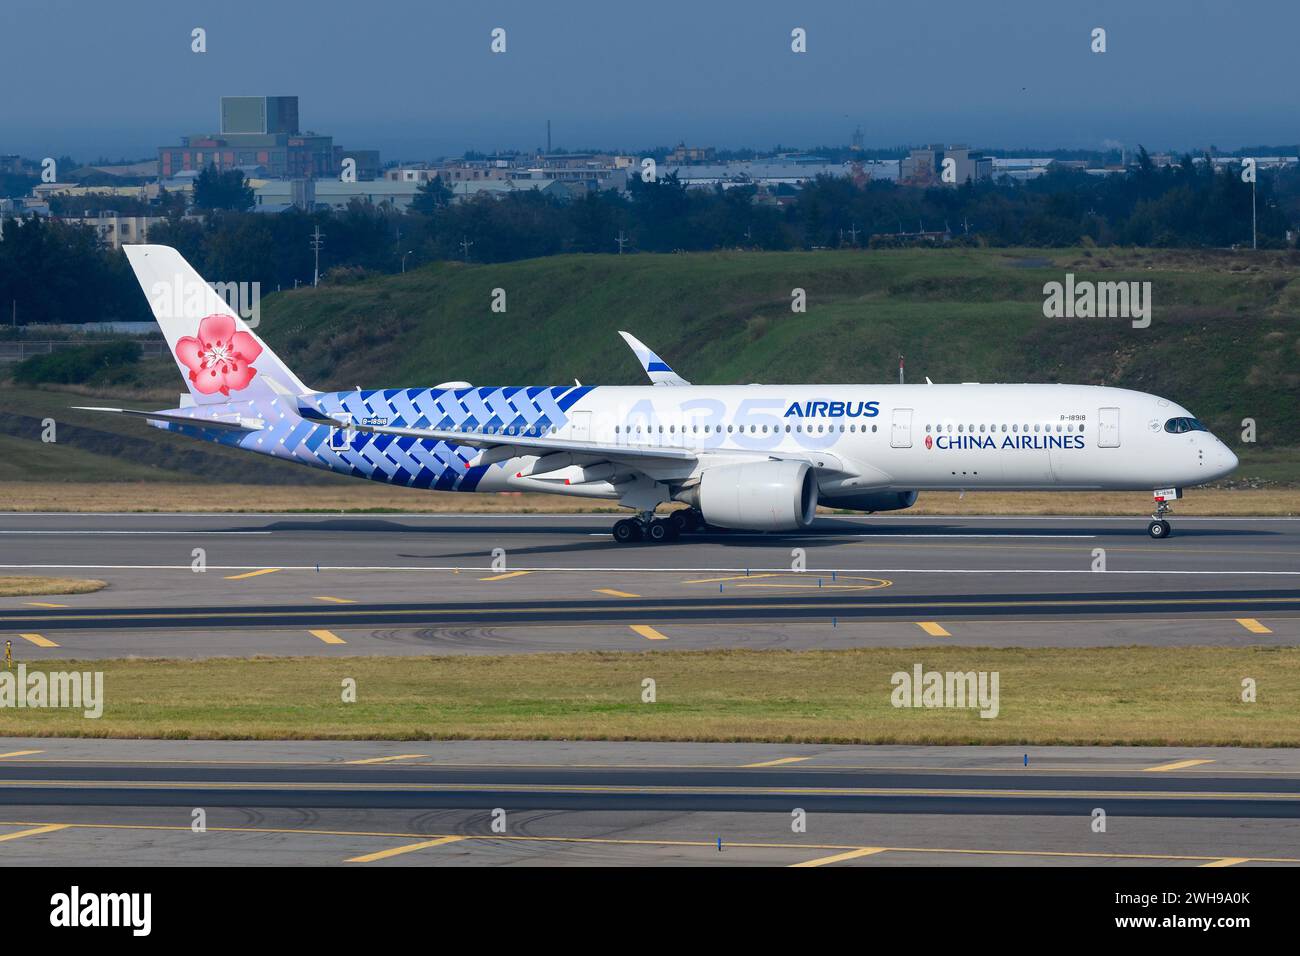 China Airlines Airbus A350-900 Landung mit Carbon Fibre Speziallackierung. Flugzeug A350 XWB von China Airlines Airbus und Kohlefaser Farben. Stockfoto